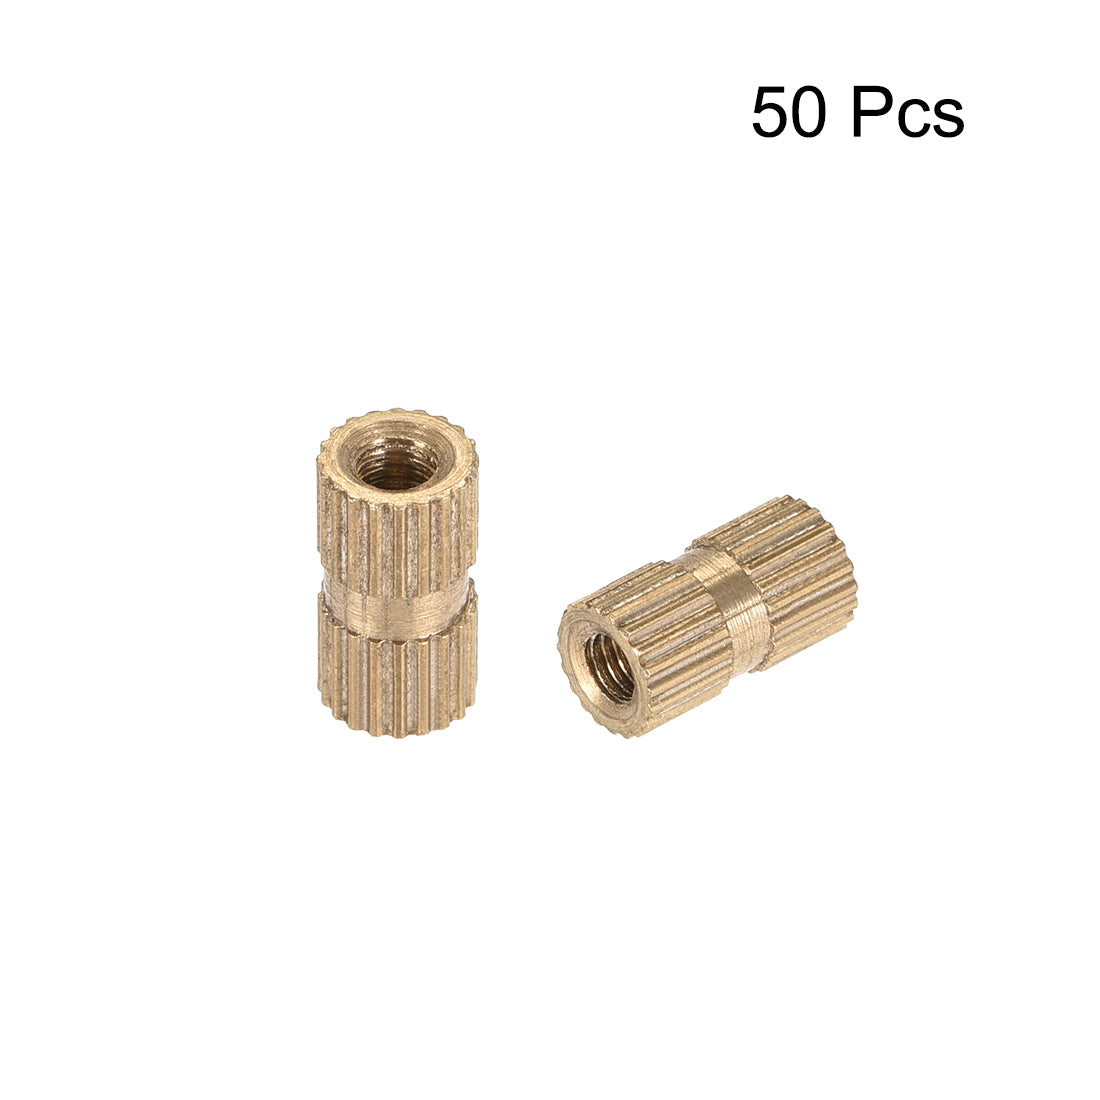 uxcell Uxcell Knurled Insert Nuts, M3 x 10mm(L) x 5mm(OD) Female Thread Brass Embedment Assortment Kit, 50 Pcs